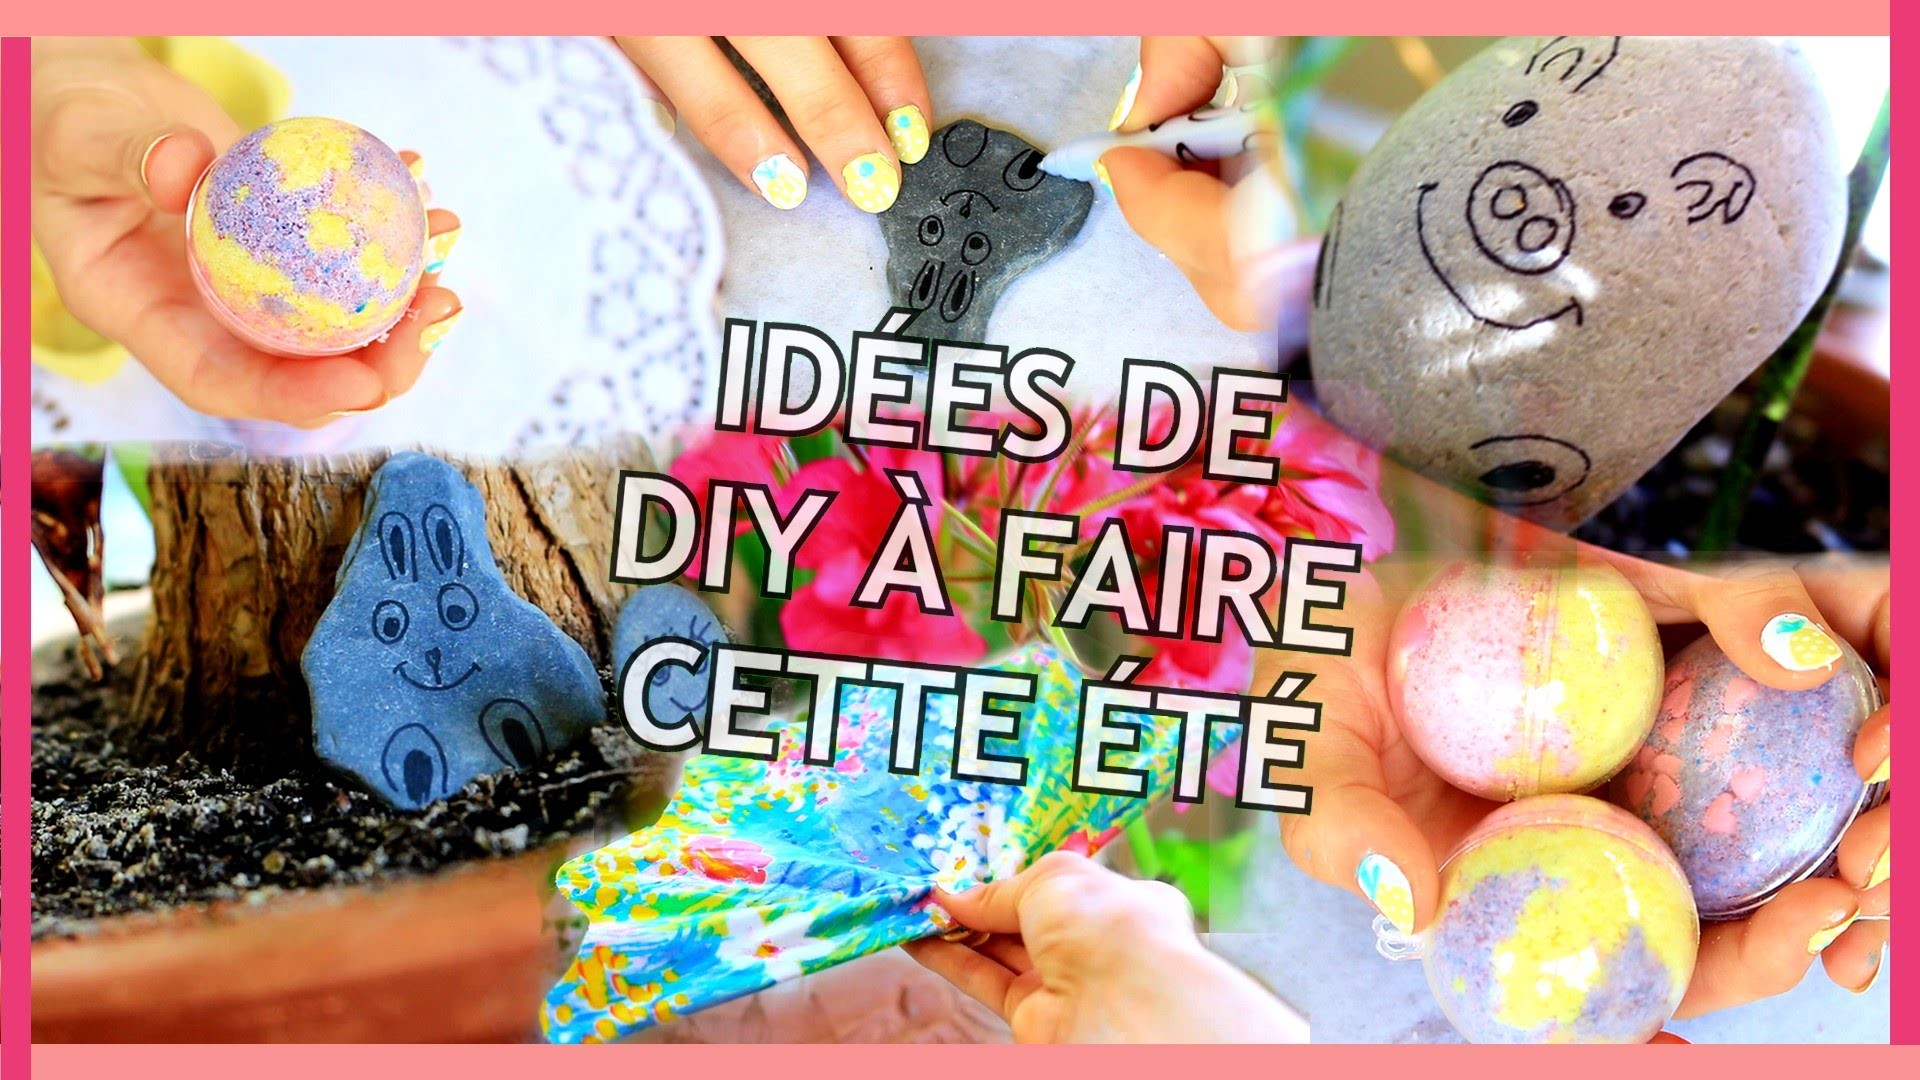 DIY ÉTÉ 2016 | Faciles, Rapides et Tumblr [Summer DIY Français]- Claire